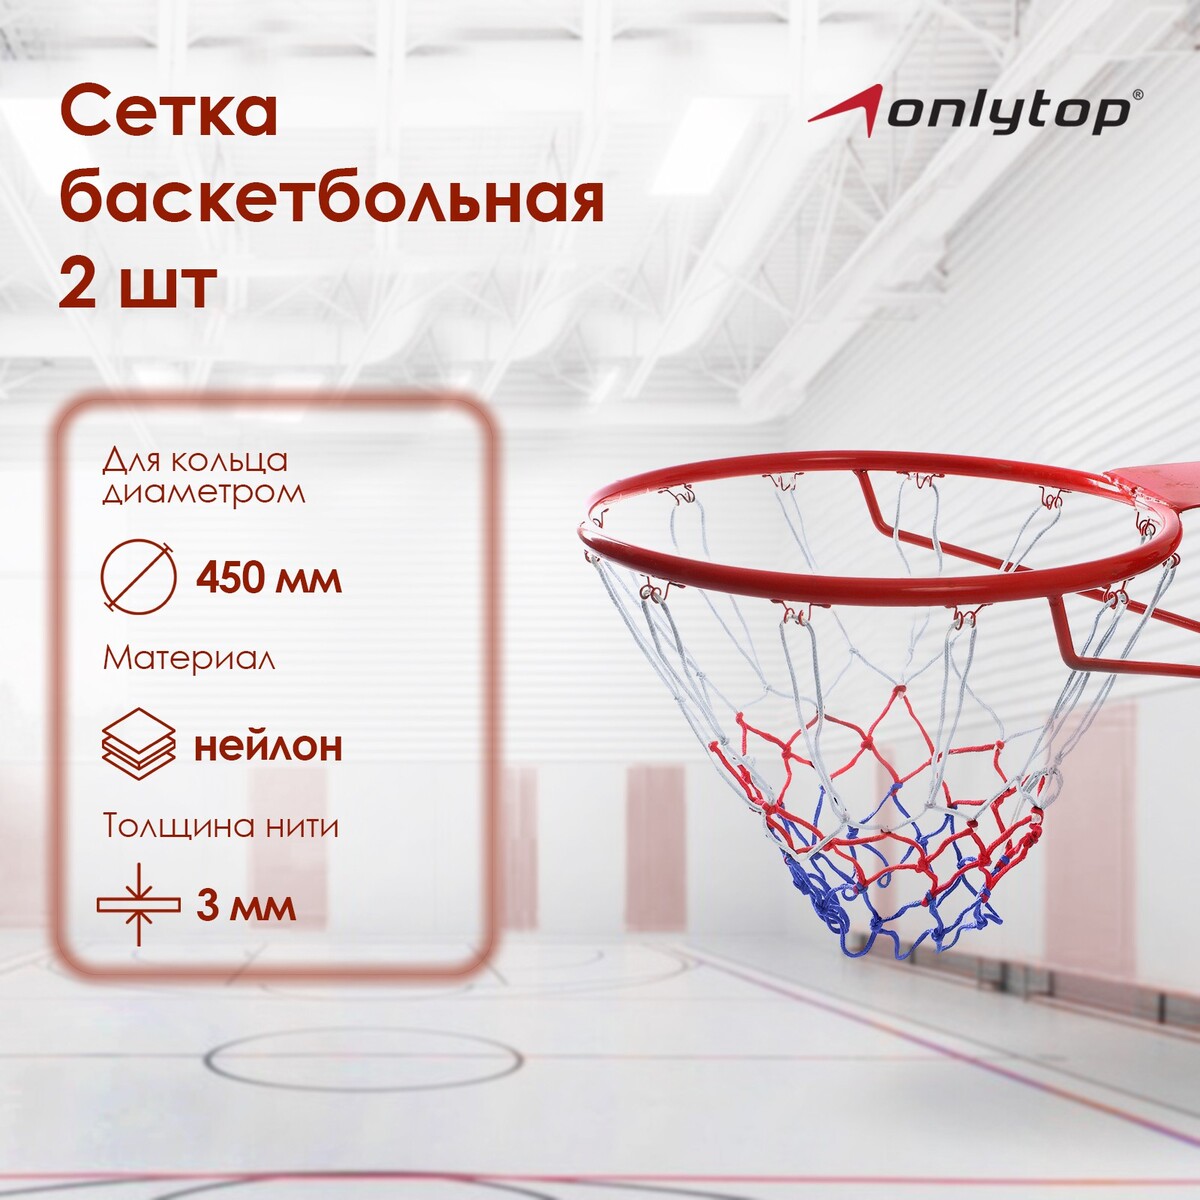 Сетка баскетбольная onlitop, 45 см, нить 3 мм, 2 шт. сетка баскетбольная onlytop 50 см нить 3 мм 2 шт